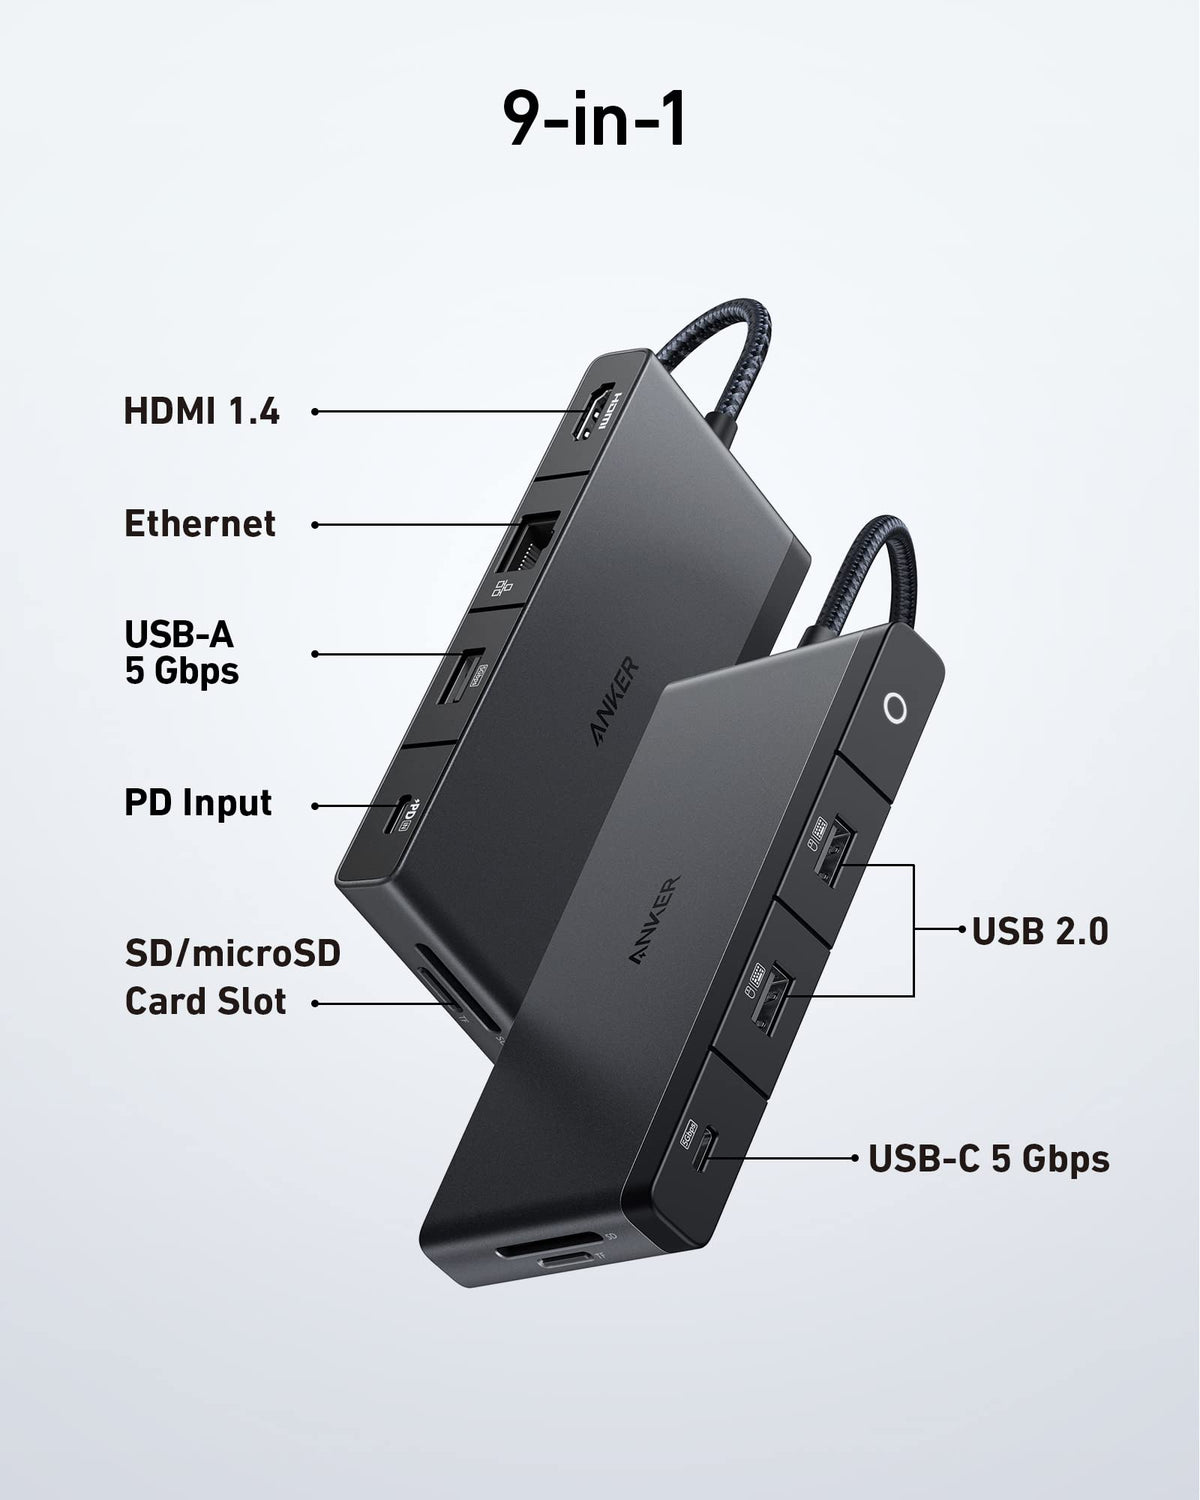 Anker &lt;b&gt;552&lt;/b&gt; USB-C Hub (9-in-1, 4K HDMI)